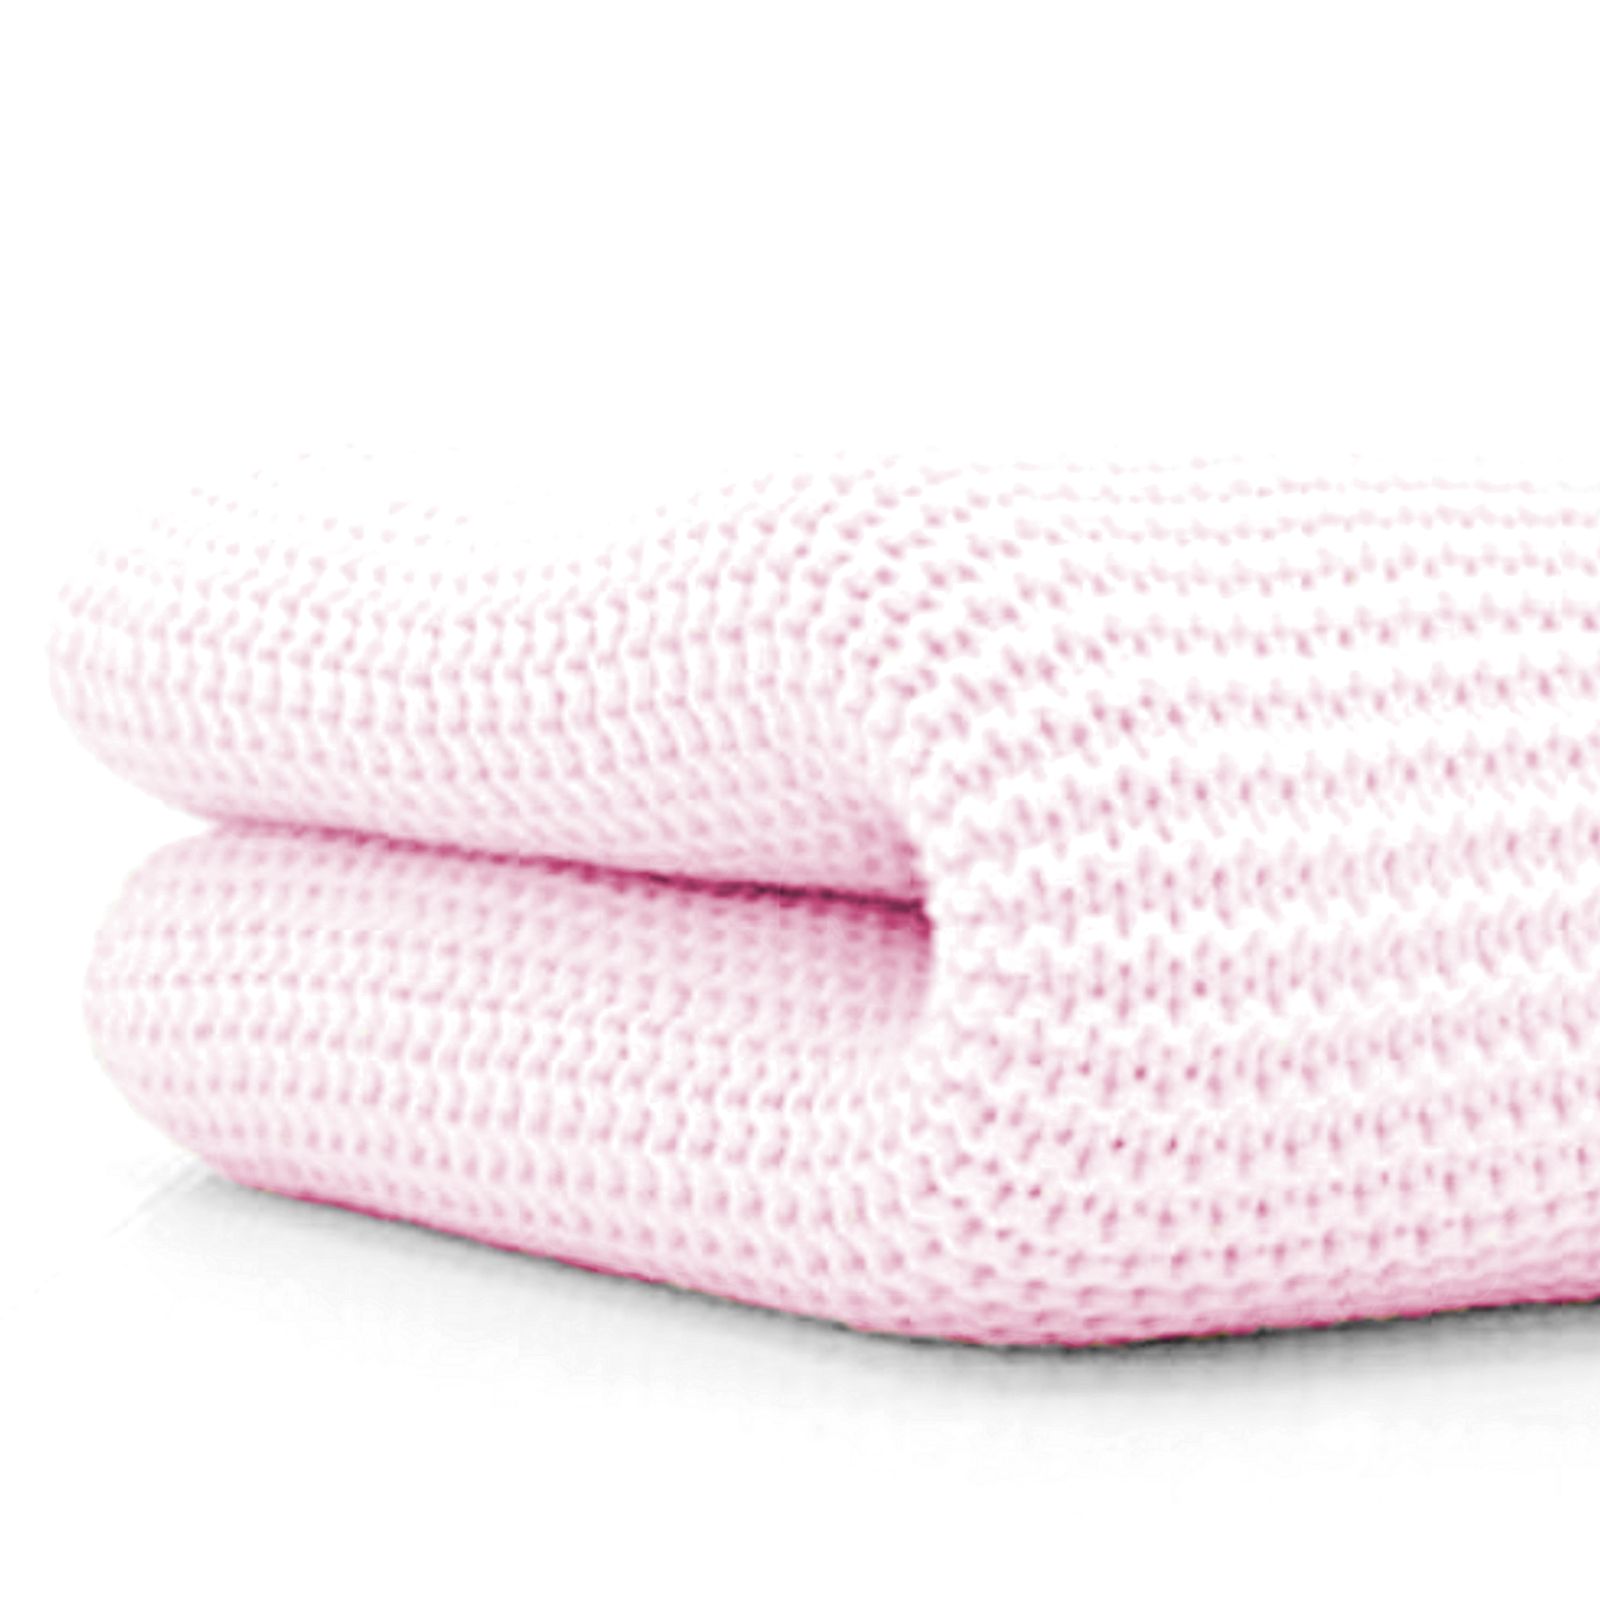 4baby Soft Cotton Cellular Pram / Moses Basket Blanket - Pink